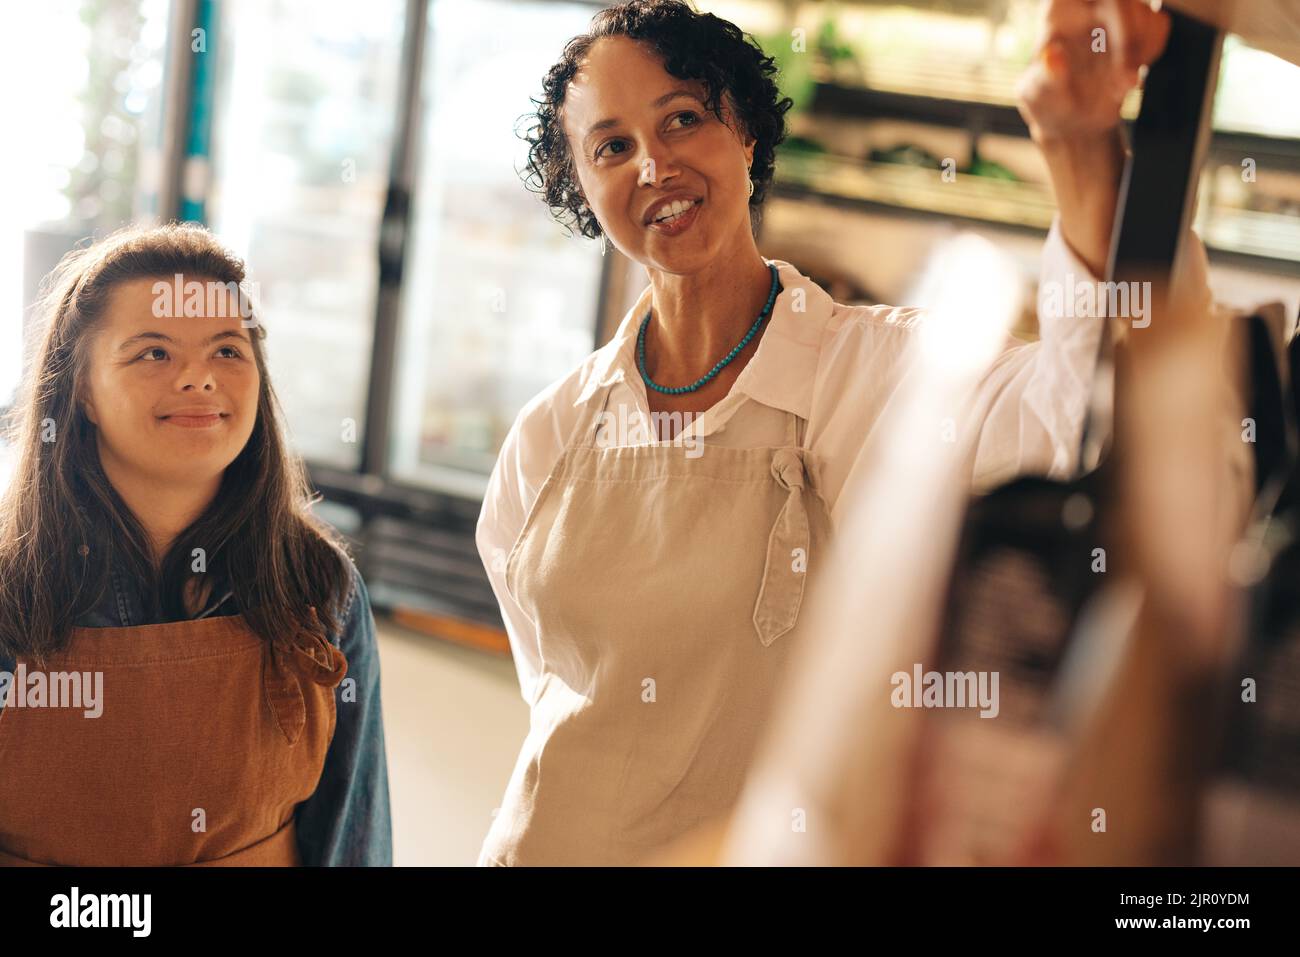 Fröhliche Geschäftsleiterin, die ihrem neuen Mitarbeiter in einem Lebensmittelgeschäft Anweisungen gibt. Weibliche Kleinunternehmerin, die eine Frau mit Down-Syndrom beschäftigt Stockfoto